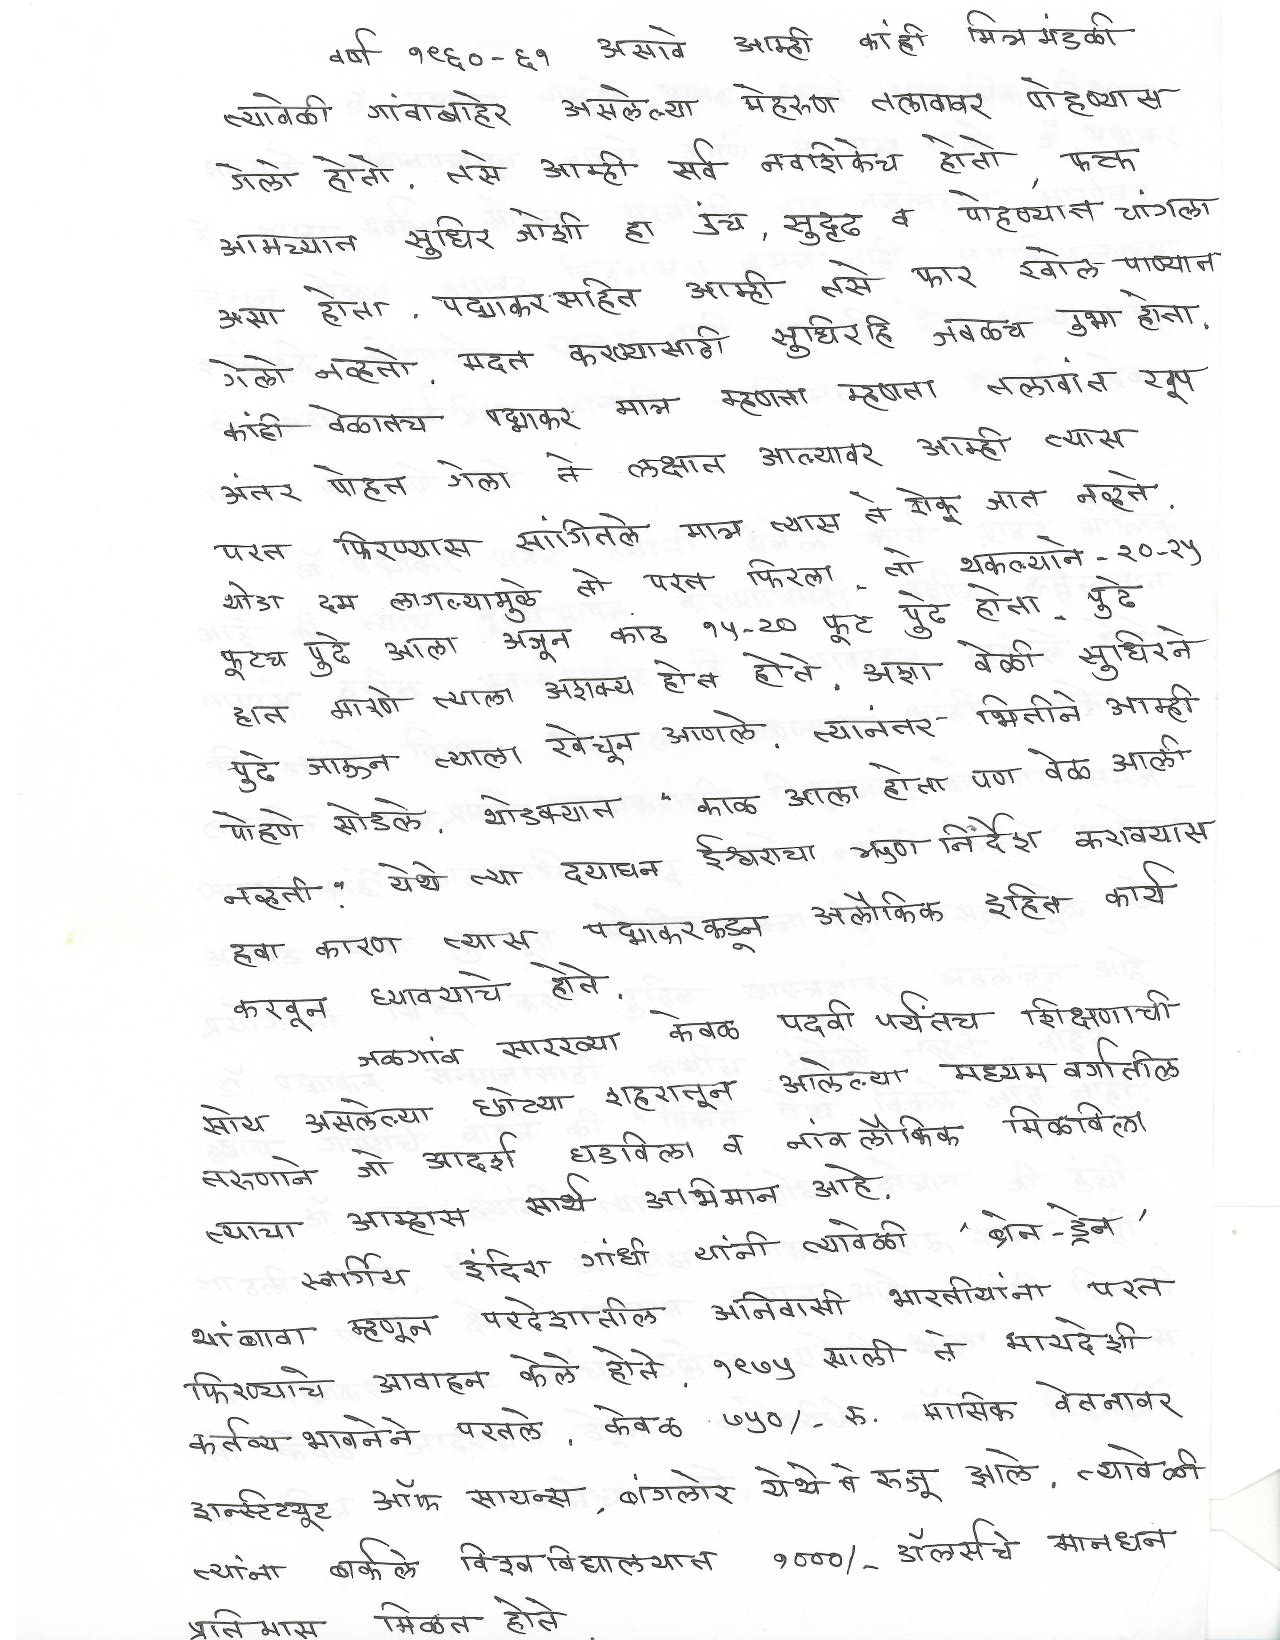 SL Kulkarni on PV Panat (Page 2)